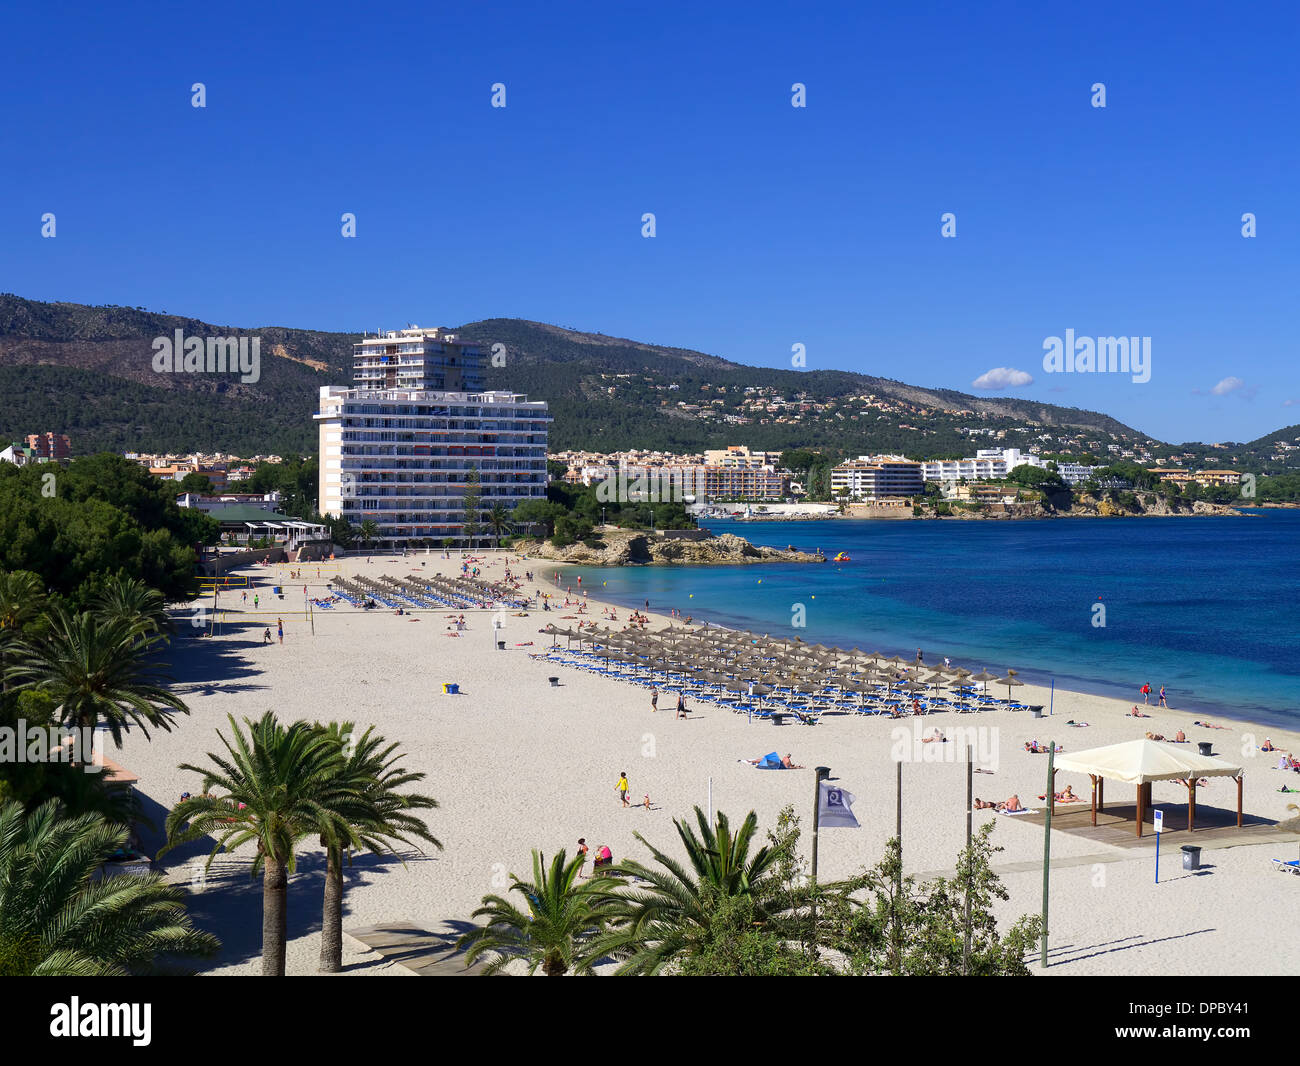 Seaview from a beach front hotel in Palma Nova Majorca Spain Stock Photo